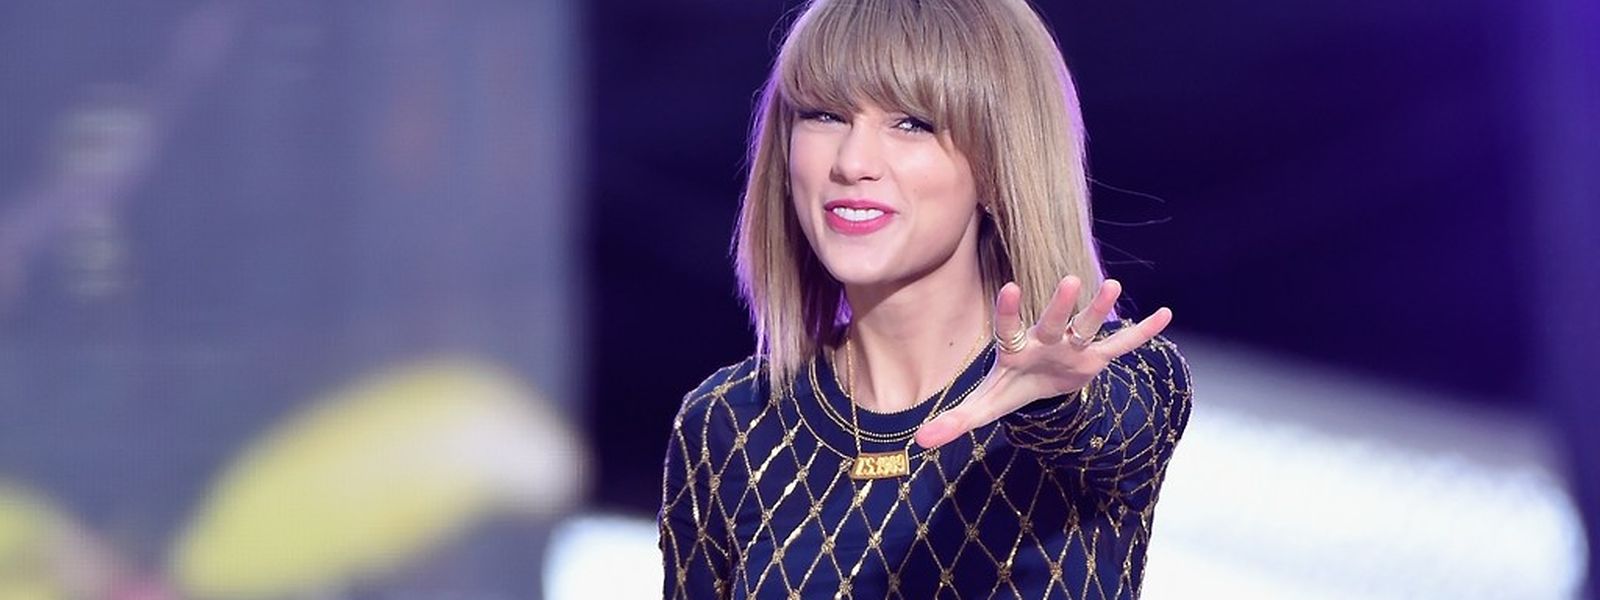 Schluss, aus, vorbei: Taylor Swift will keine Musik mehr auf Spotify anbieten.